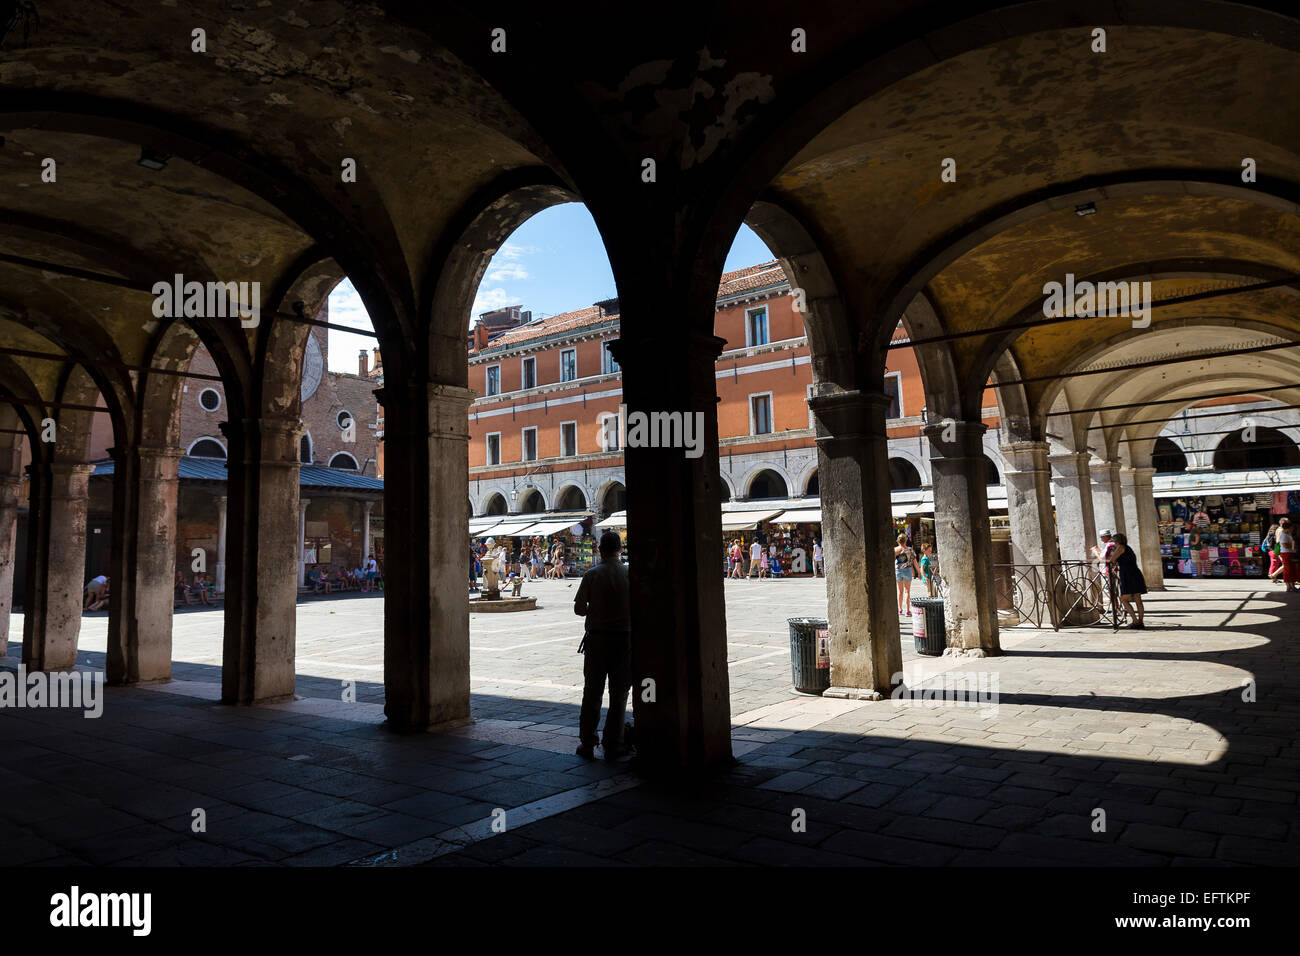 Portico. Campo San Giacomo in Rialto. Venice, Italy. Stock Photo